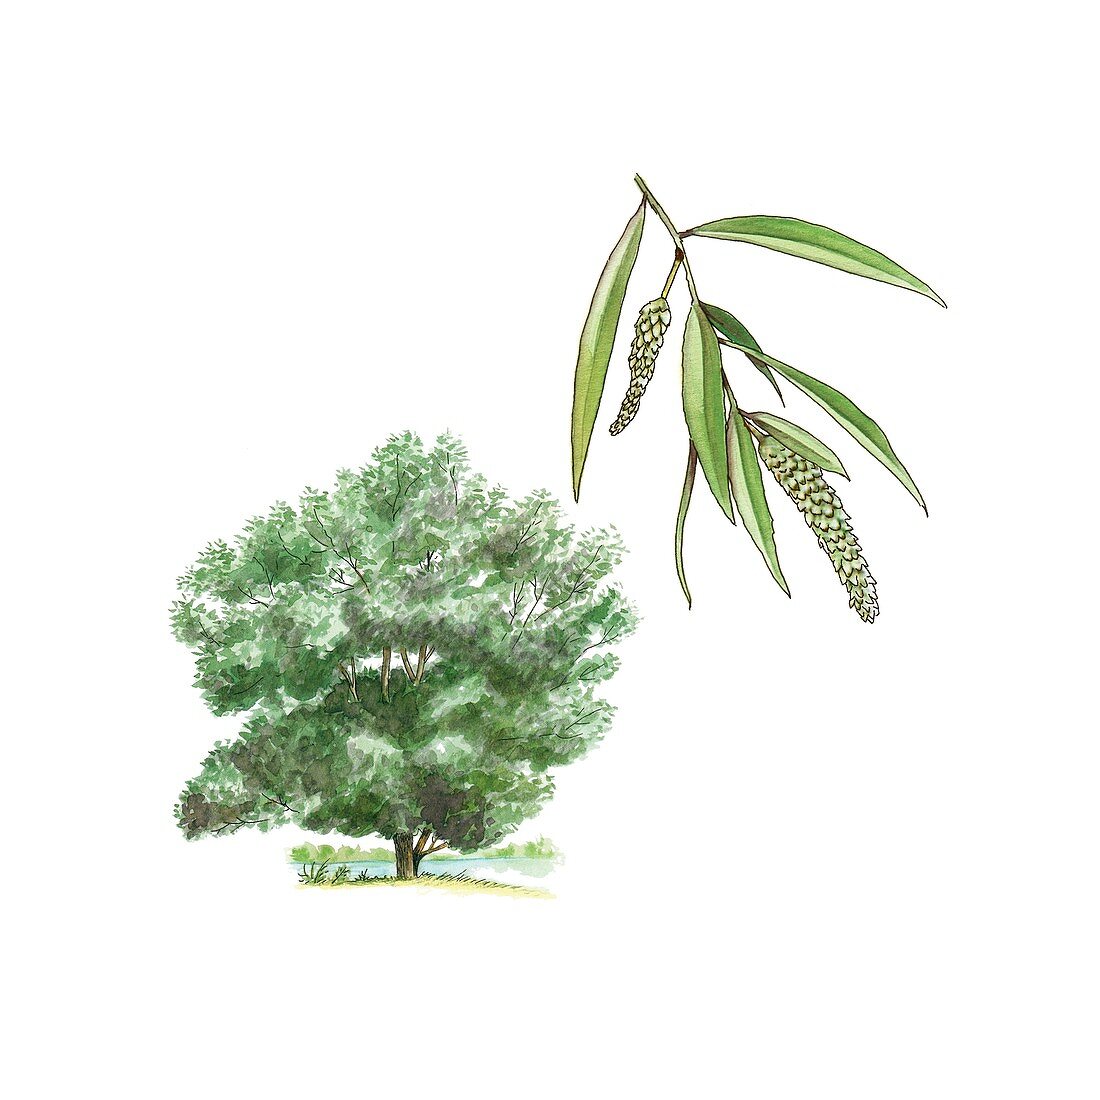 White willow (Salix alba) tree,artwork